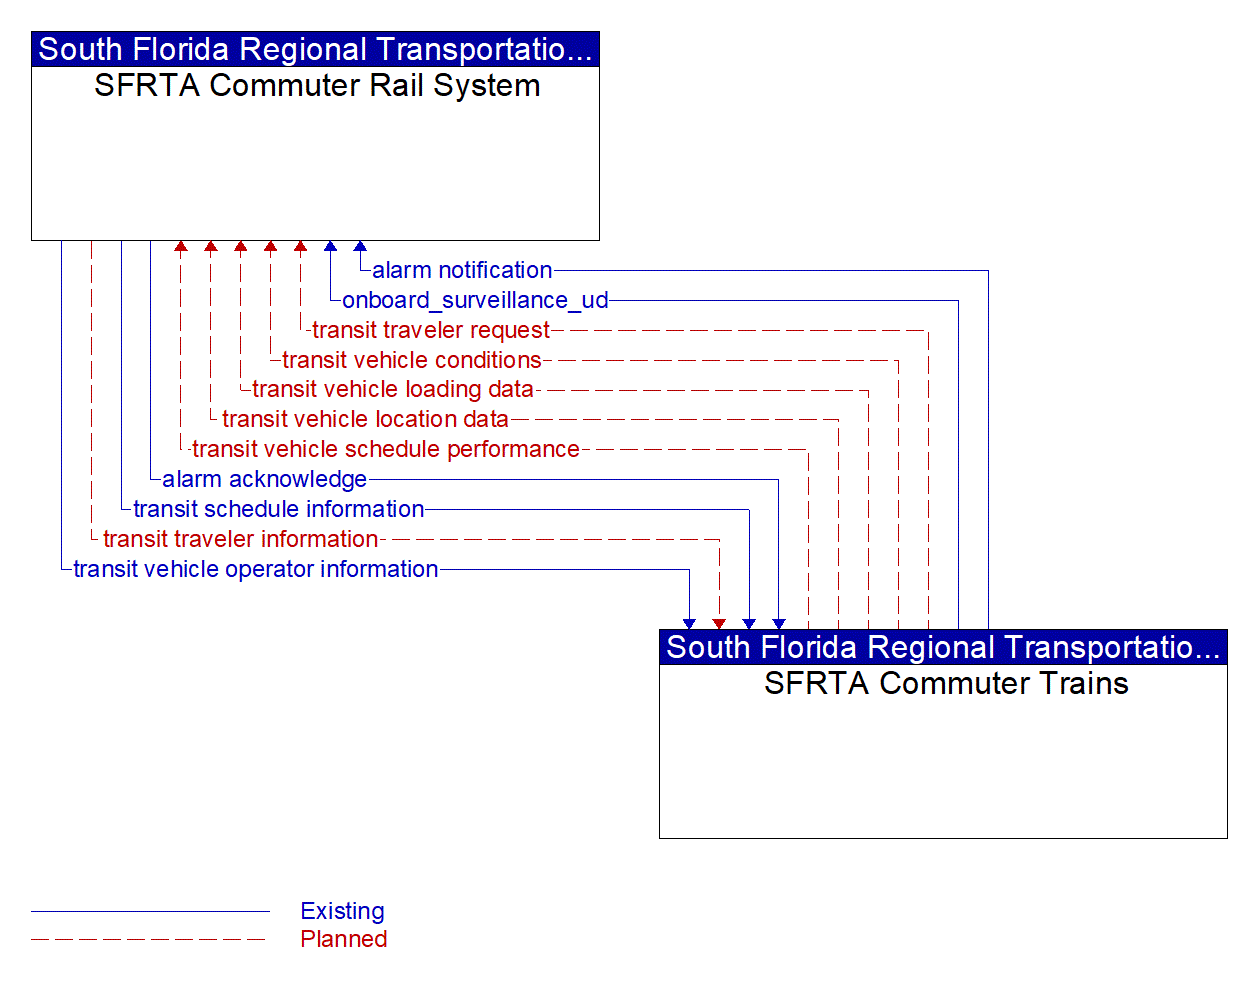 Architecture Flow Diagram: SFRTA Commuter Trains <--> SFRTA Commuter Rail System